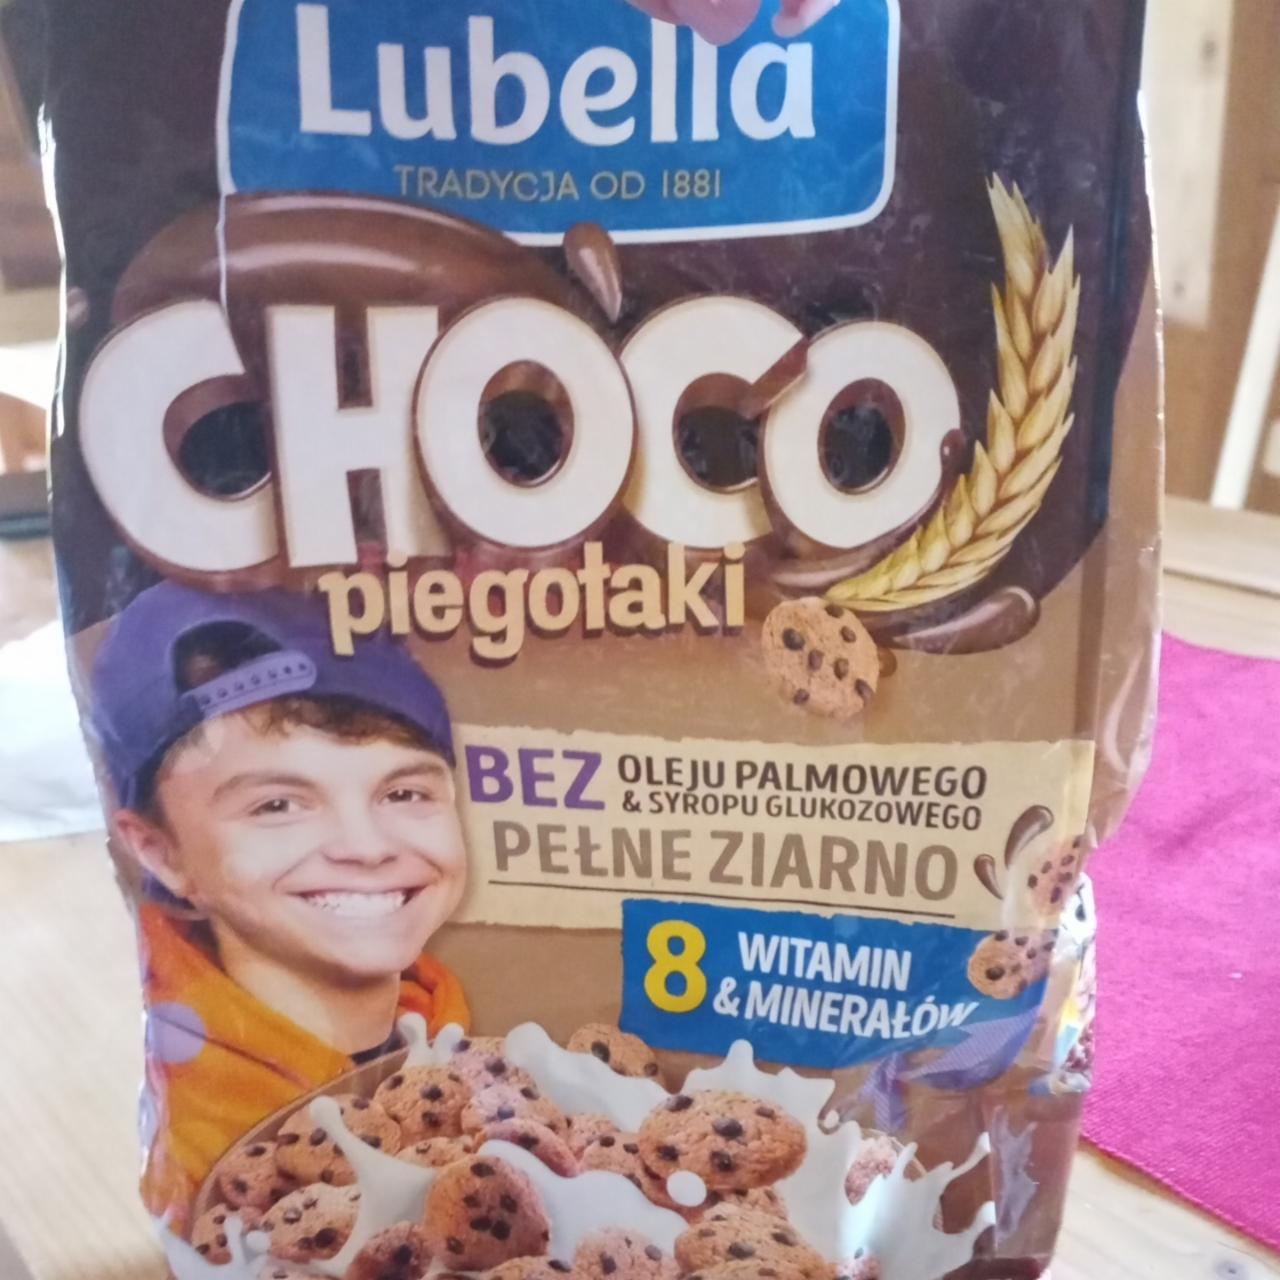 Фото - Пластівці - печива Choco piegotaki Lubella